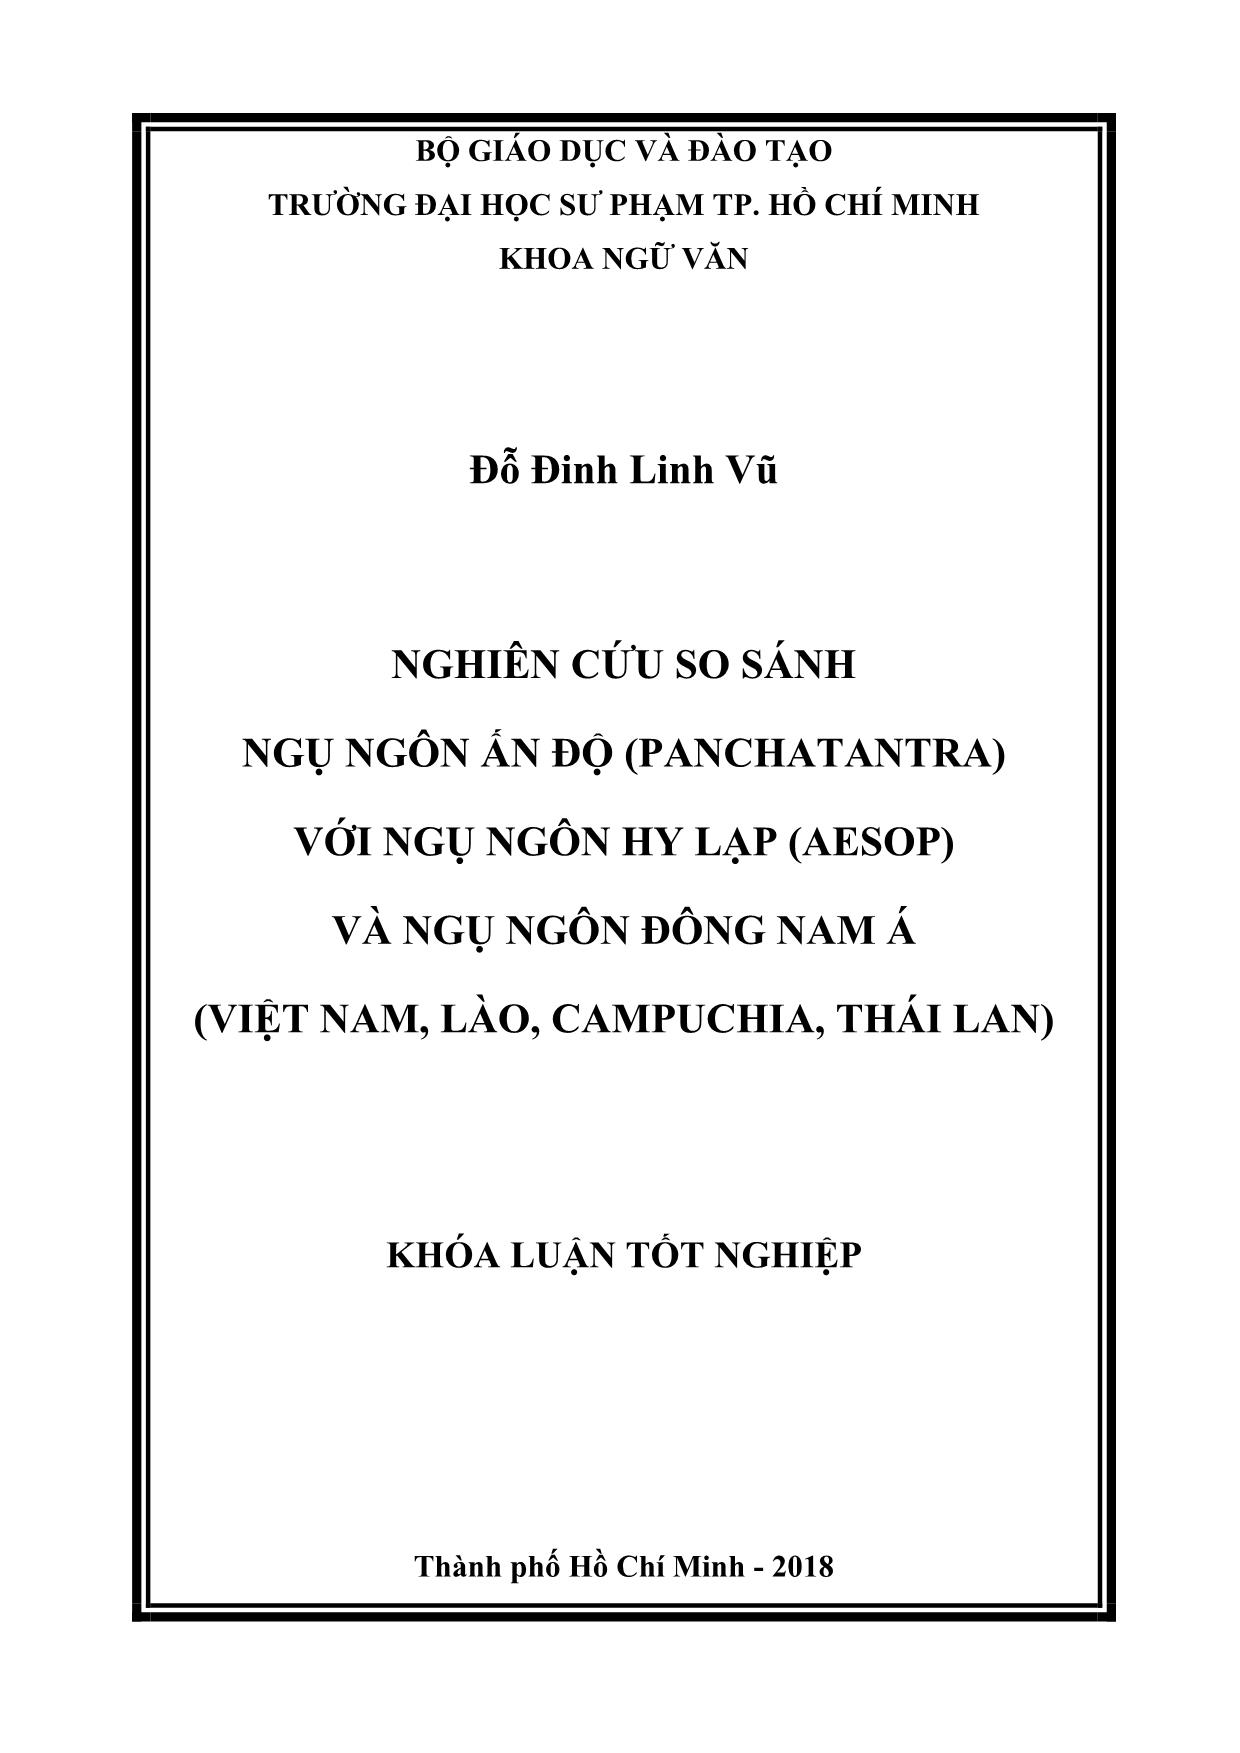 Nghiên cứu so sánh ngụ ngôn Ấn Độ (Panchatantra) với ngụ ngôn Hy Lạp (Aesop) và ngụ ngôn Đông Nam Á (Việt Nam, Lào, Campuchia, Thái Lan) trang 1